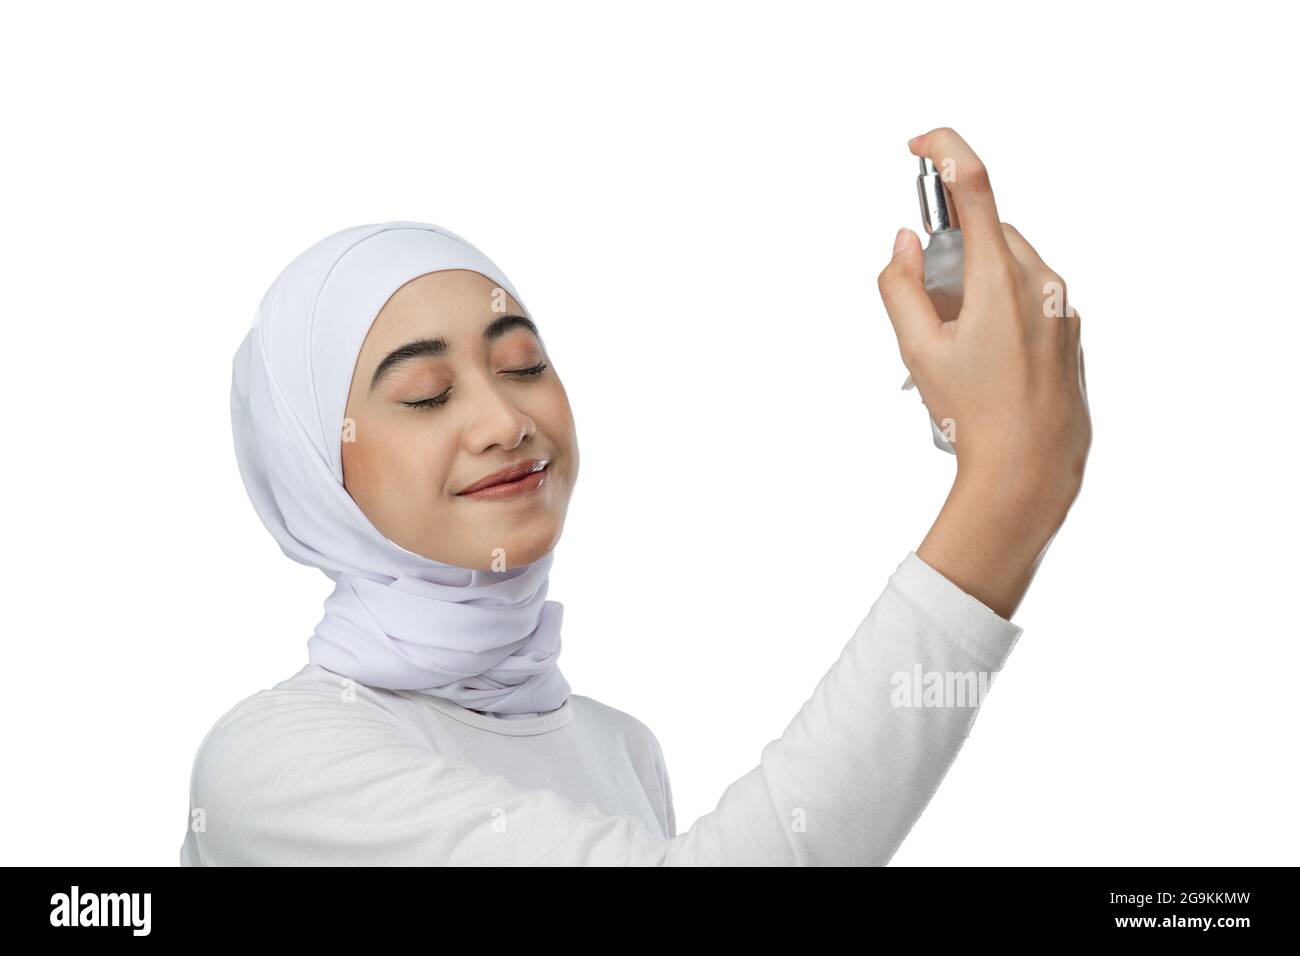 Hijabi facial